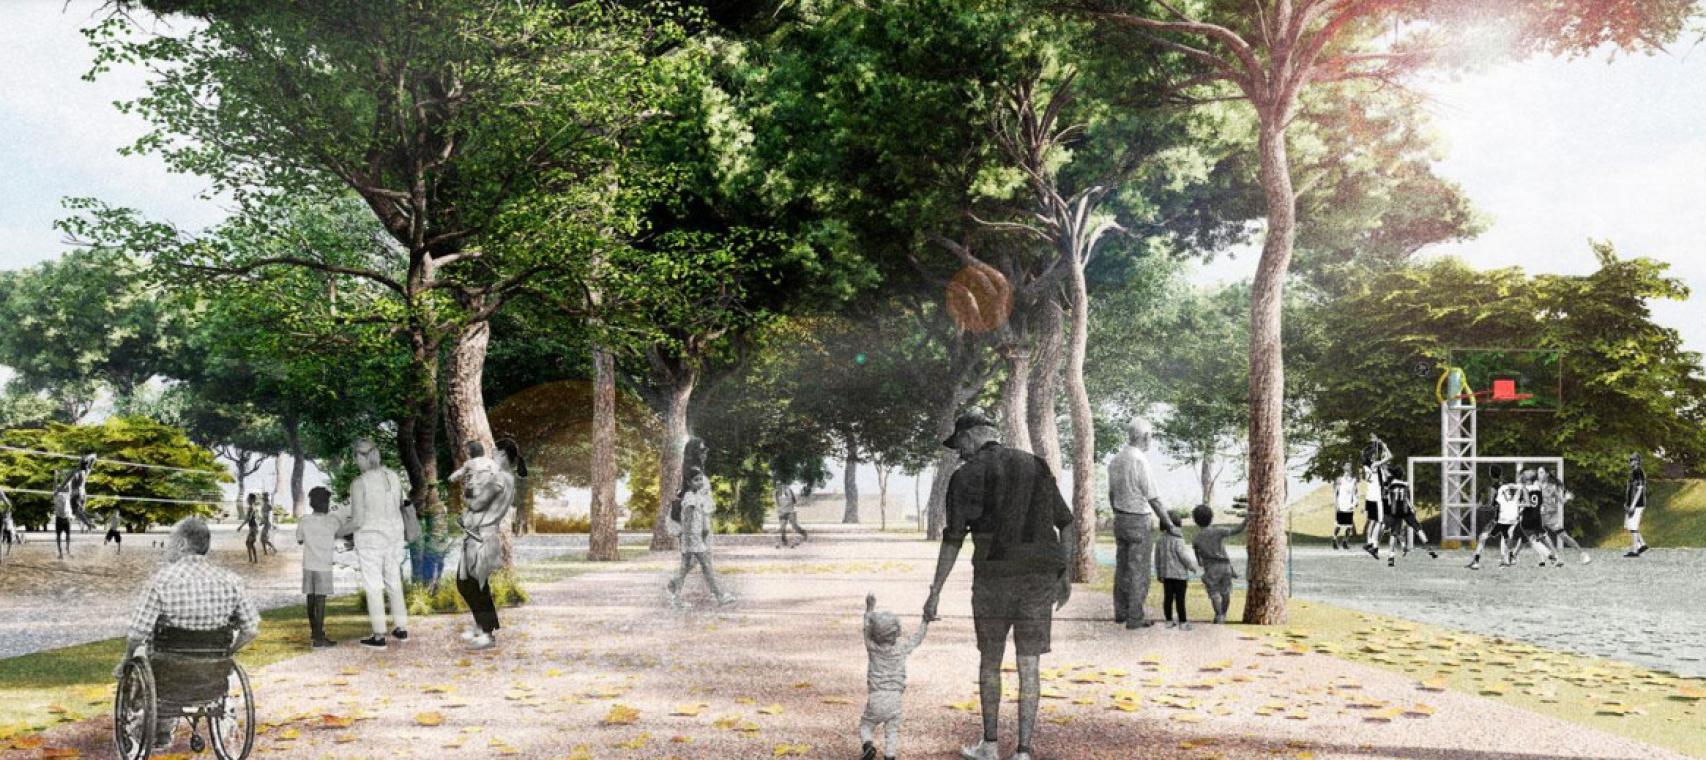 Imágenes del futuro parque metropolitano del Campamento Benítez, en Málaga